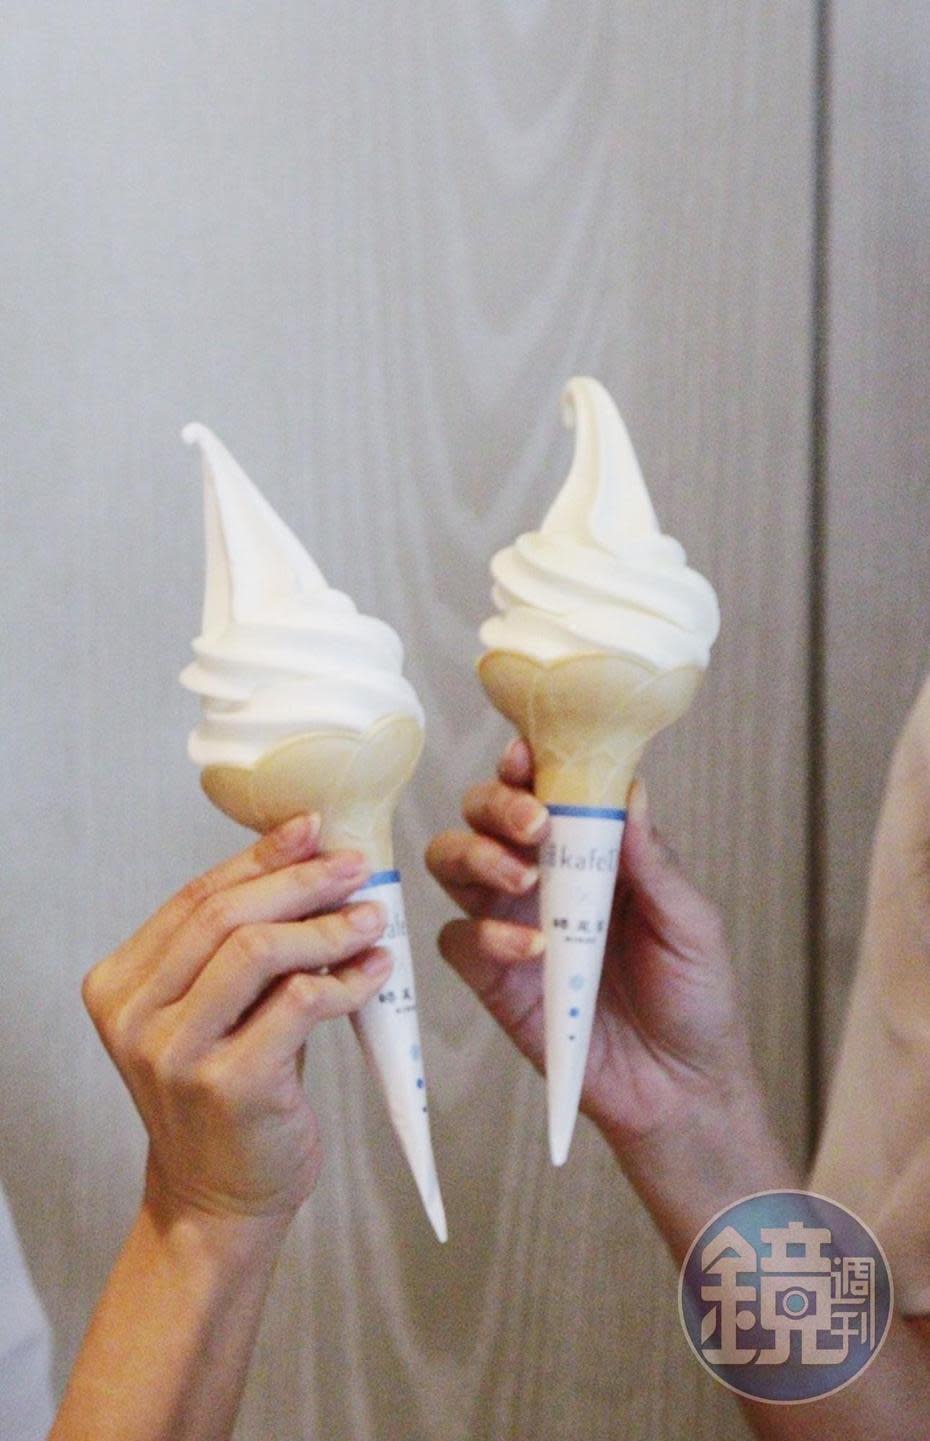 霜淇淋專家「蜷尾家」讓百齡油化身霜淇淋口味驚奇又美味。